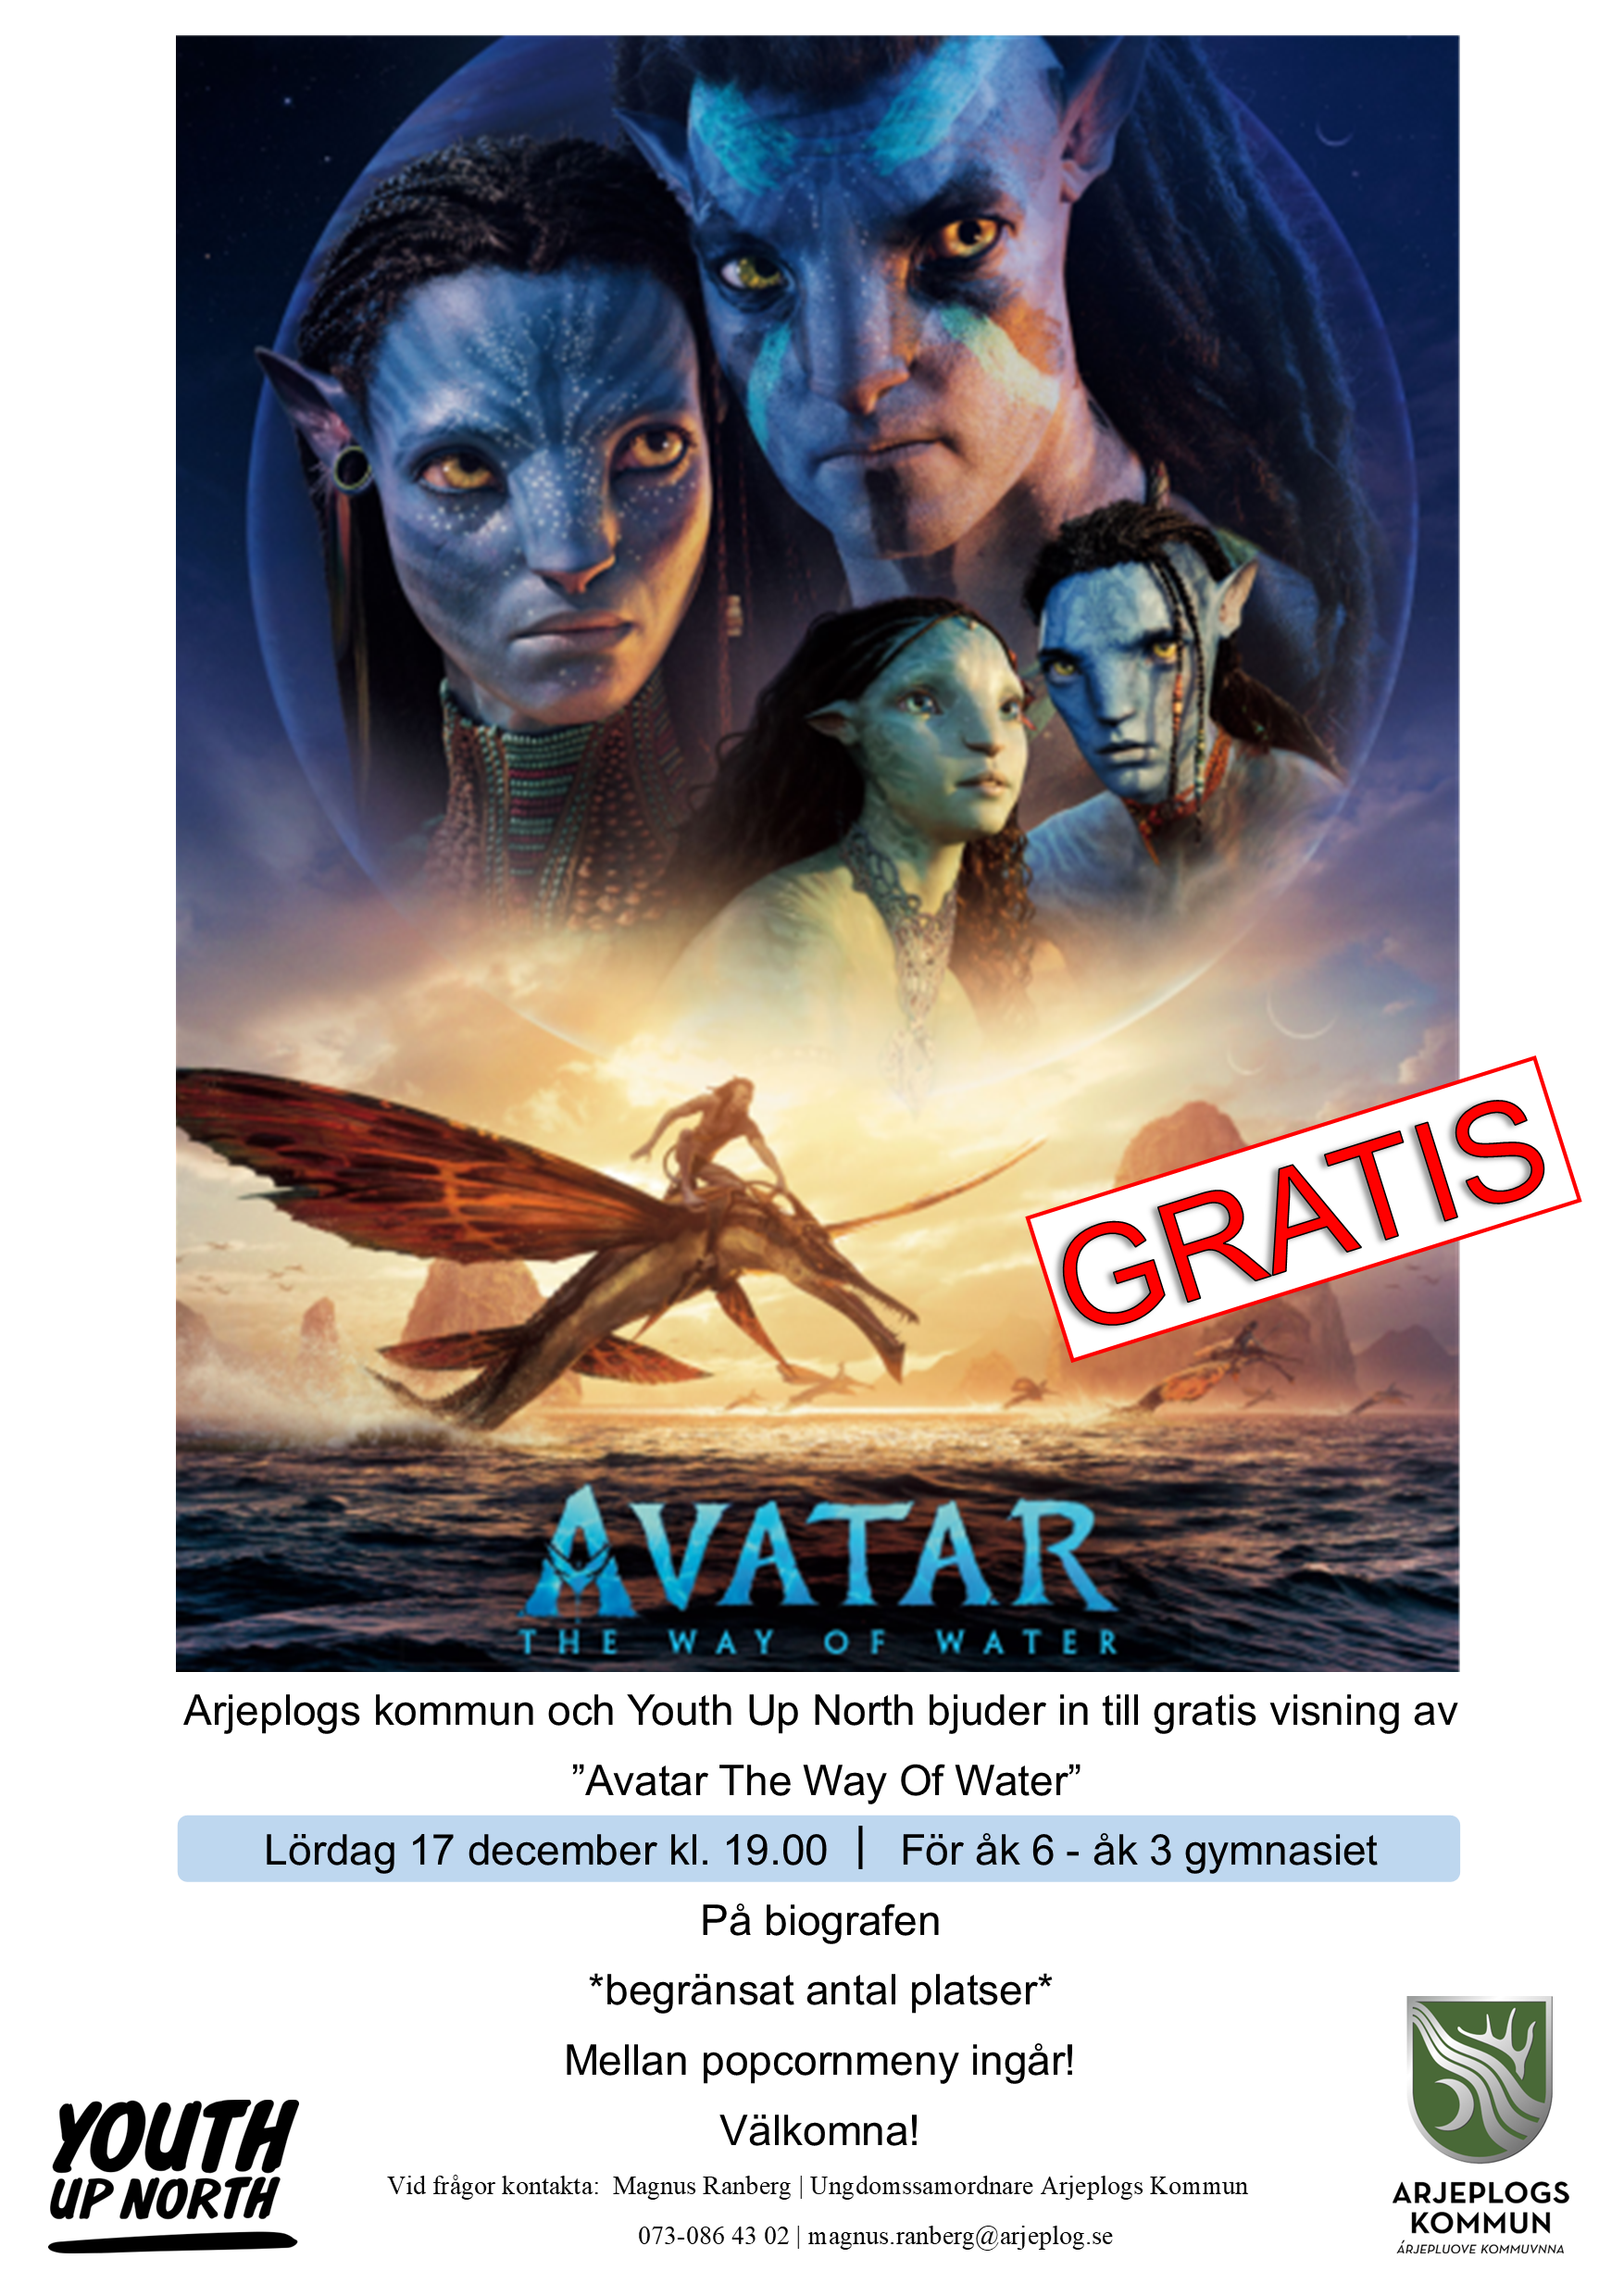 Avatar 2-postern, med två avatarer som tittar mot oss.